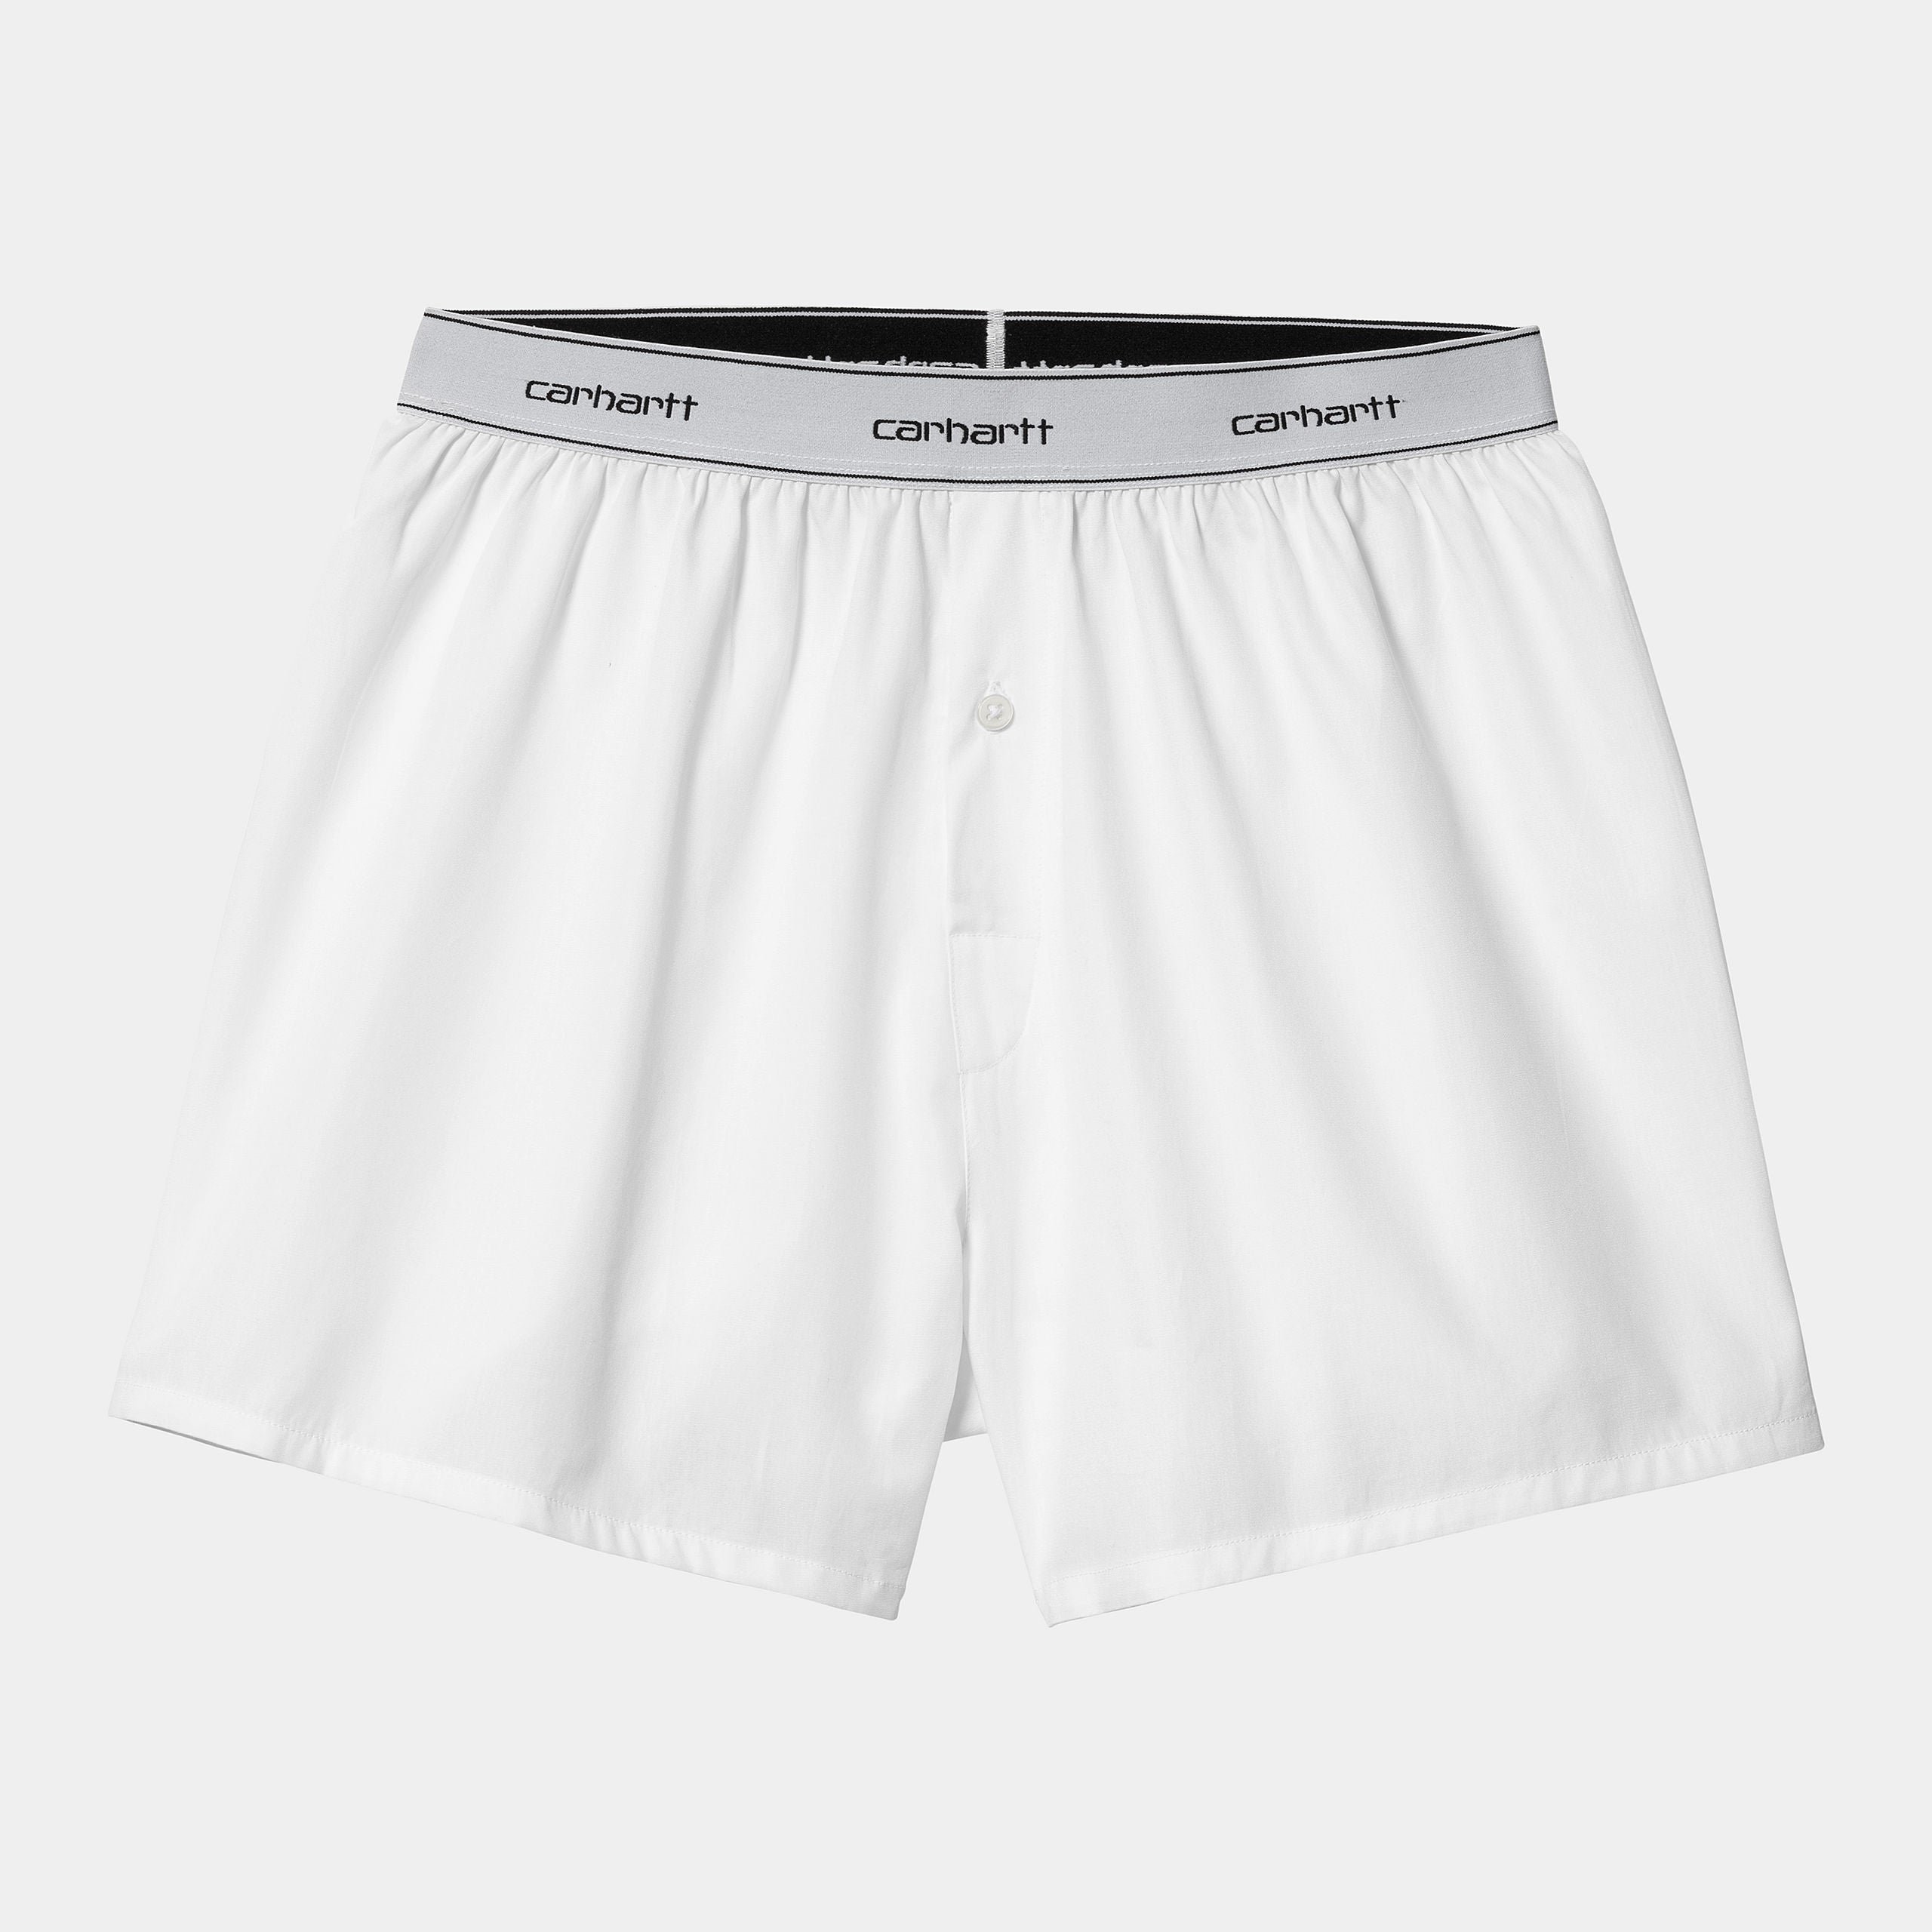 Weiße Boxershorts von Carhartt WIP aus 100% Baumwolle und Gummibund mit Carhartt Schriftzug.